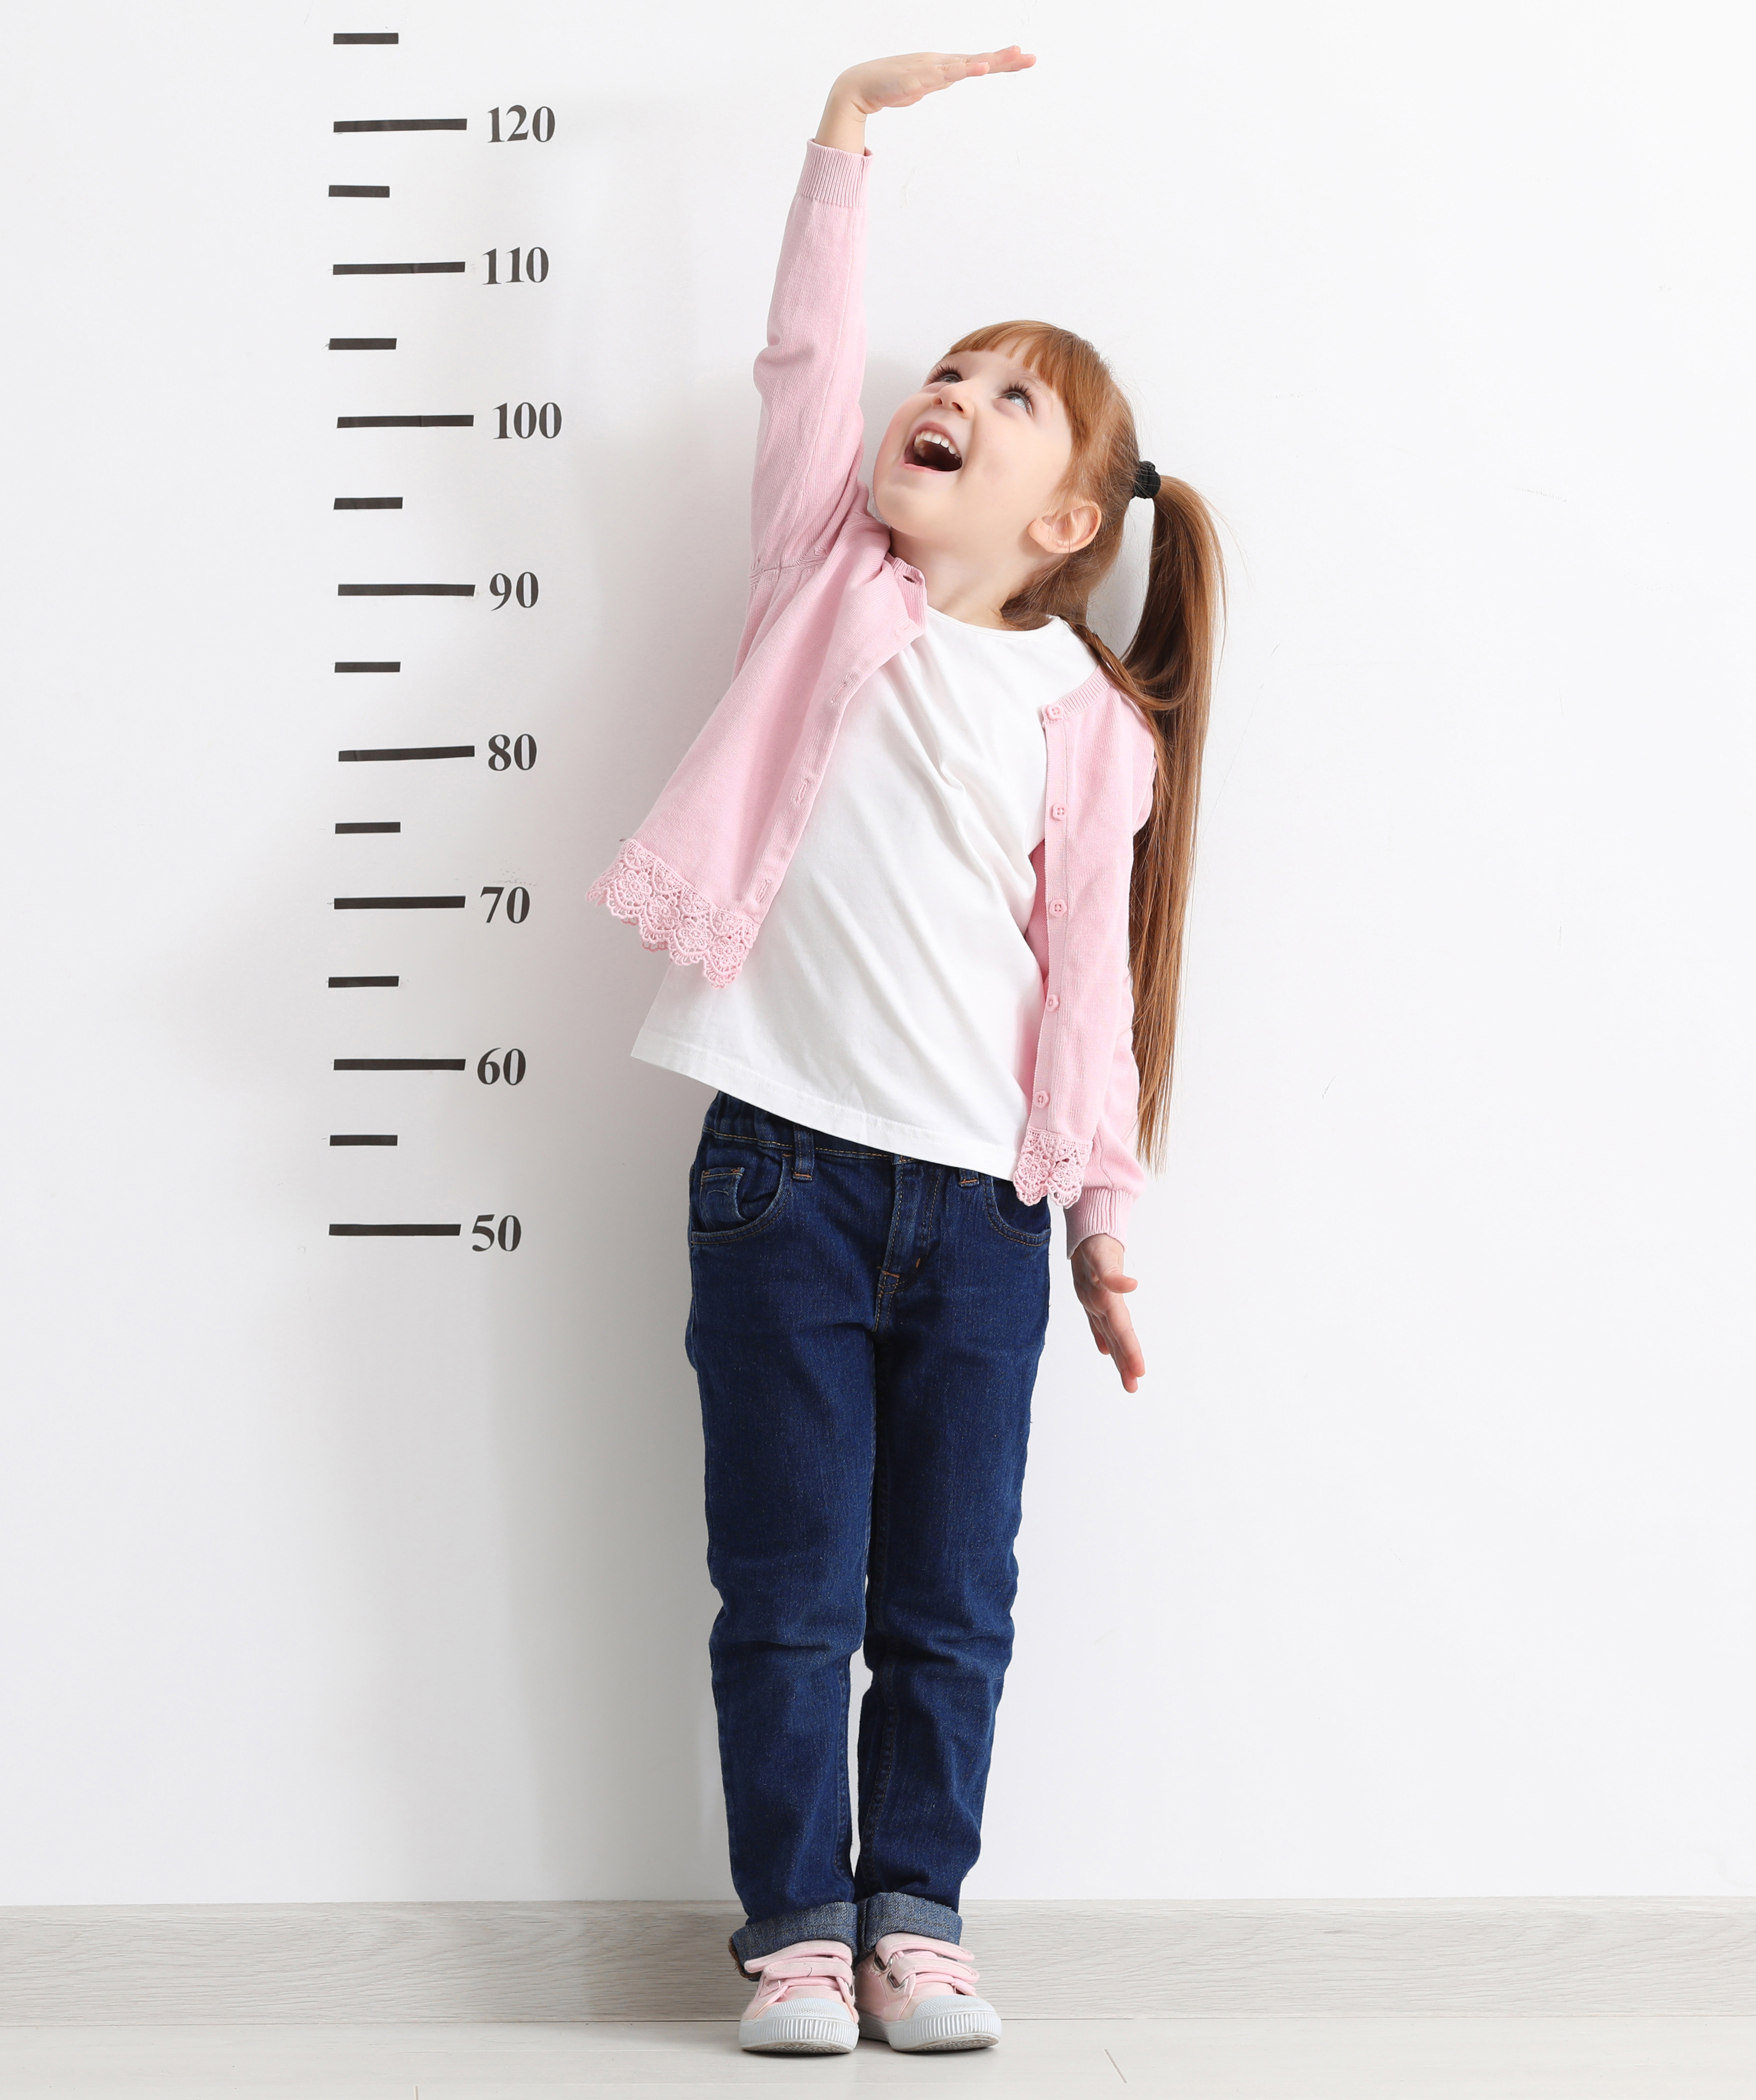 Человек небольшого роста 7. Ребенок меряет рост. Ребенок измеряет рост. Ростомер. Измерение роста школьников.